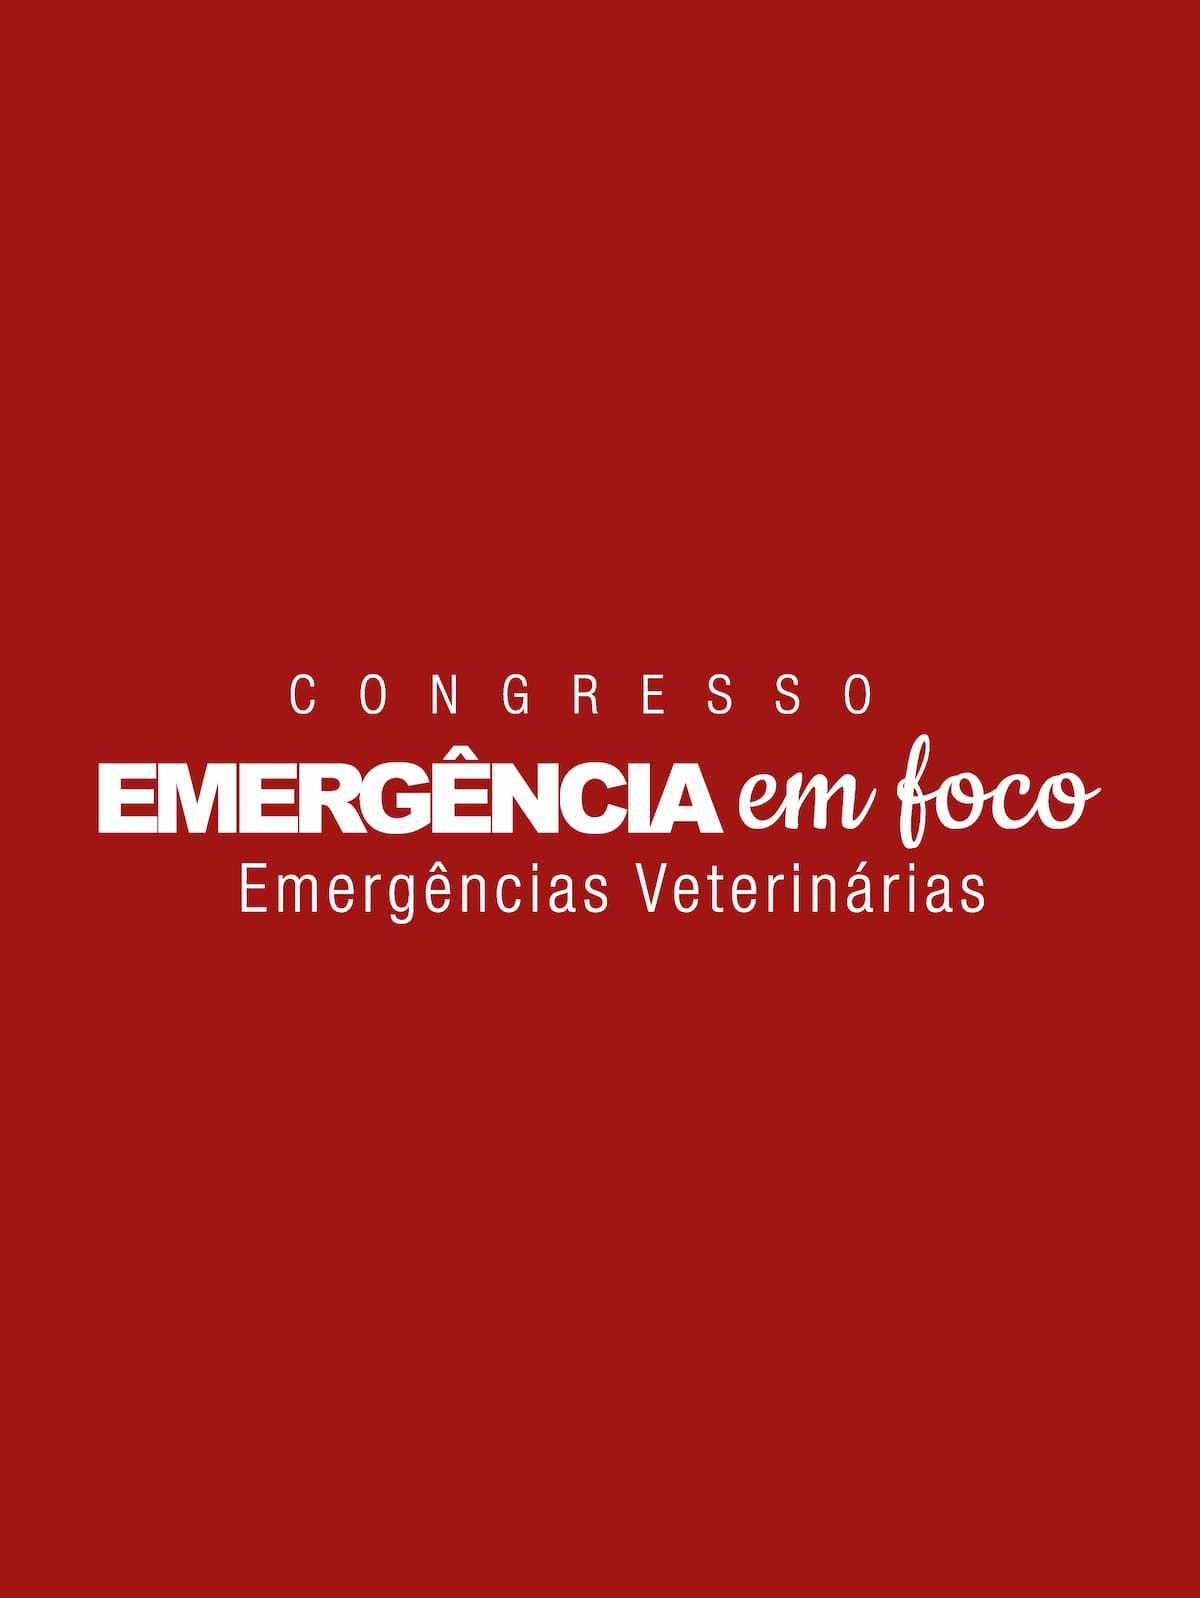 Congresso Emergência Em Foco Veterinários